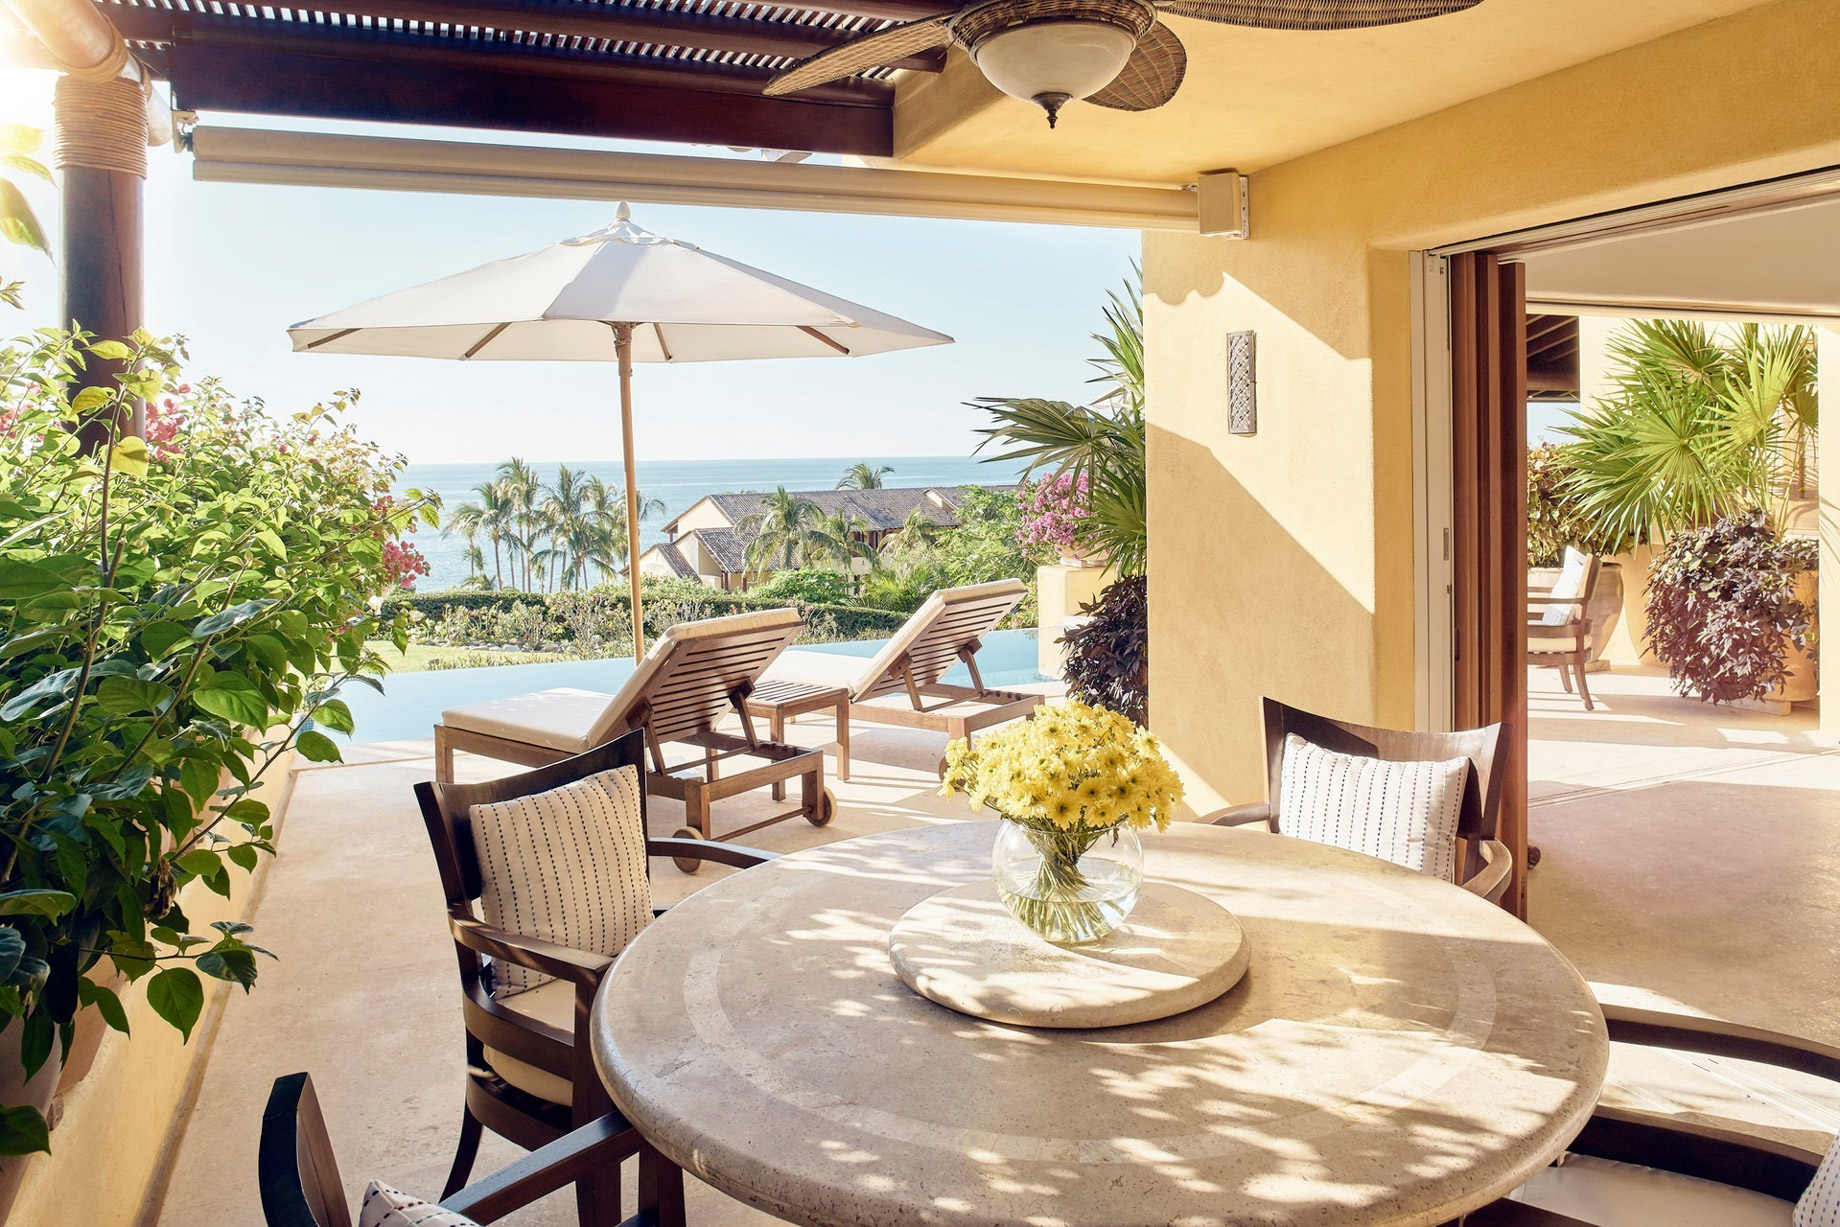 Four Seasons Resort Punta Mita – Nayarit, Mexico – Invierno Ocean Villa Pool Deck